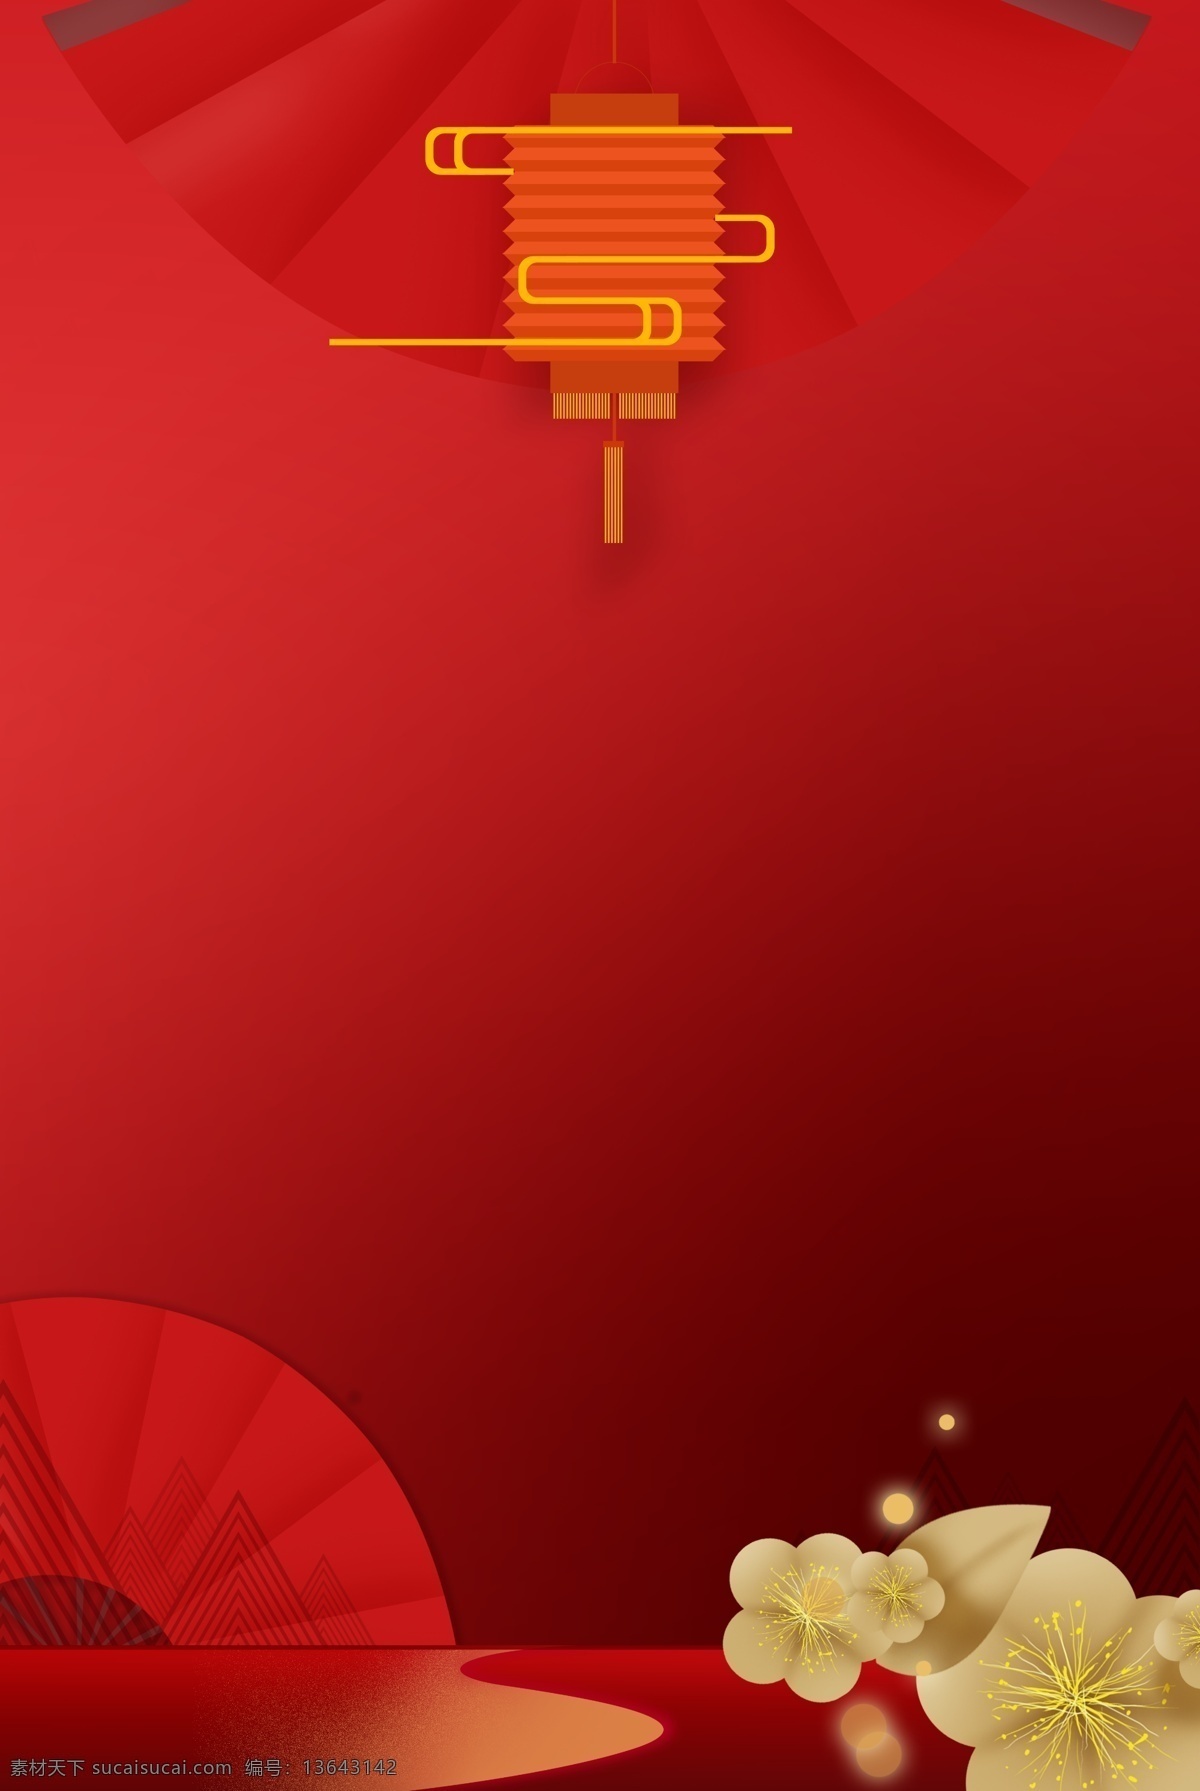 中国 风 纸扇 红色 灯笼 分层 banner 中国风纸扇 中国风 活动 促销 花朵 创意合成